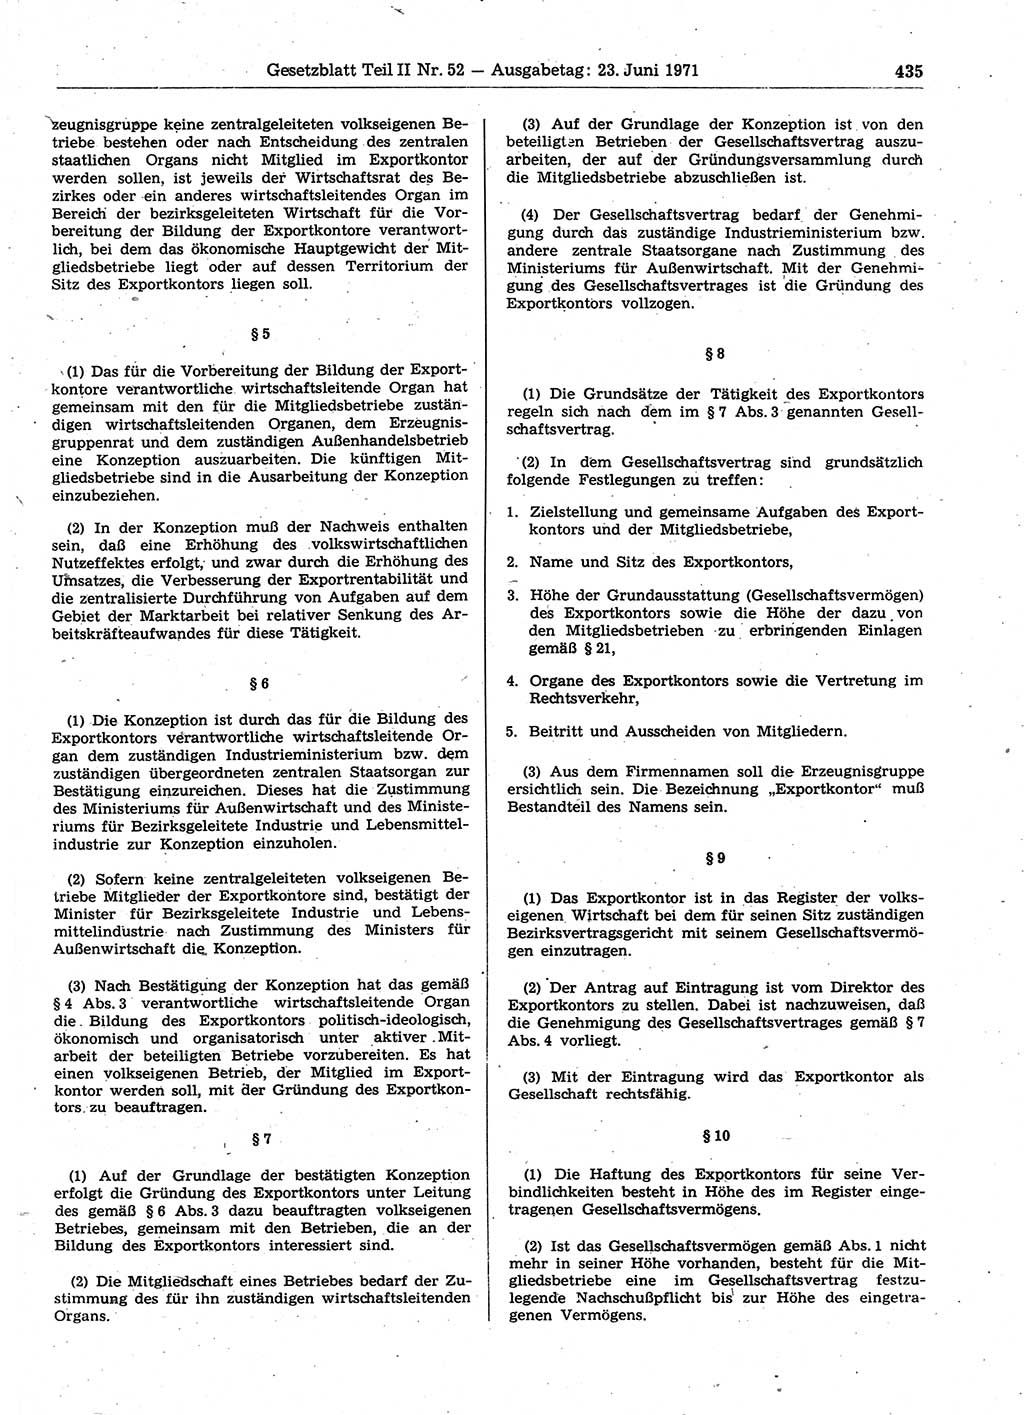 Gesetzblatt (GBl.) der Deutschen Demokratischen Republik (DDR) Teil ⅠⅠ 1971, Seite 435 (GBl. DDR ⅠⅠ 1971, S. 435)